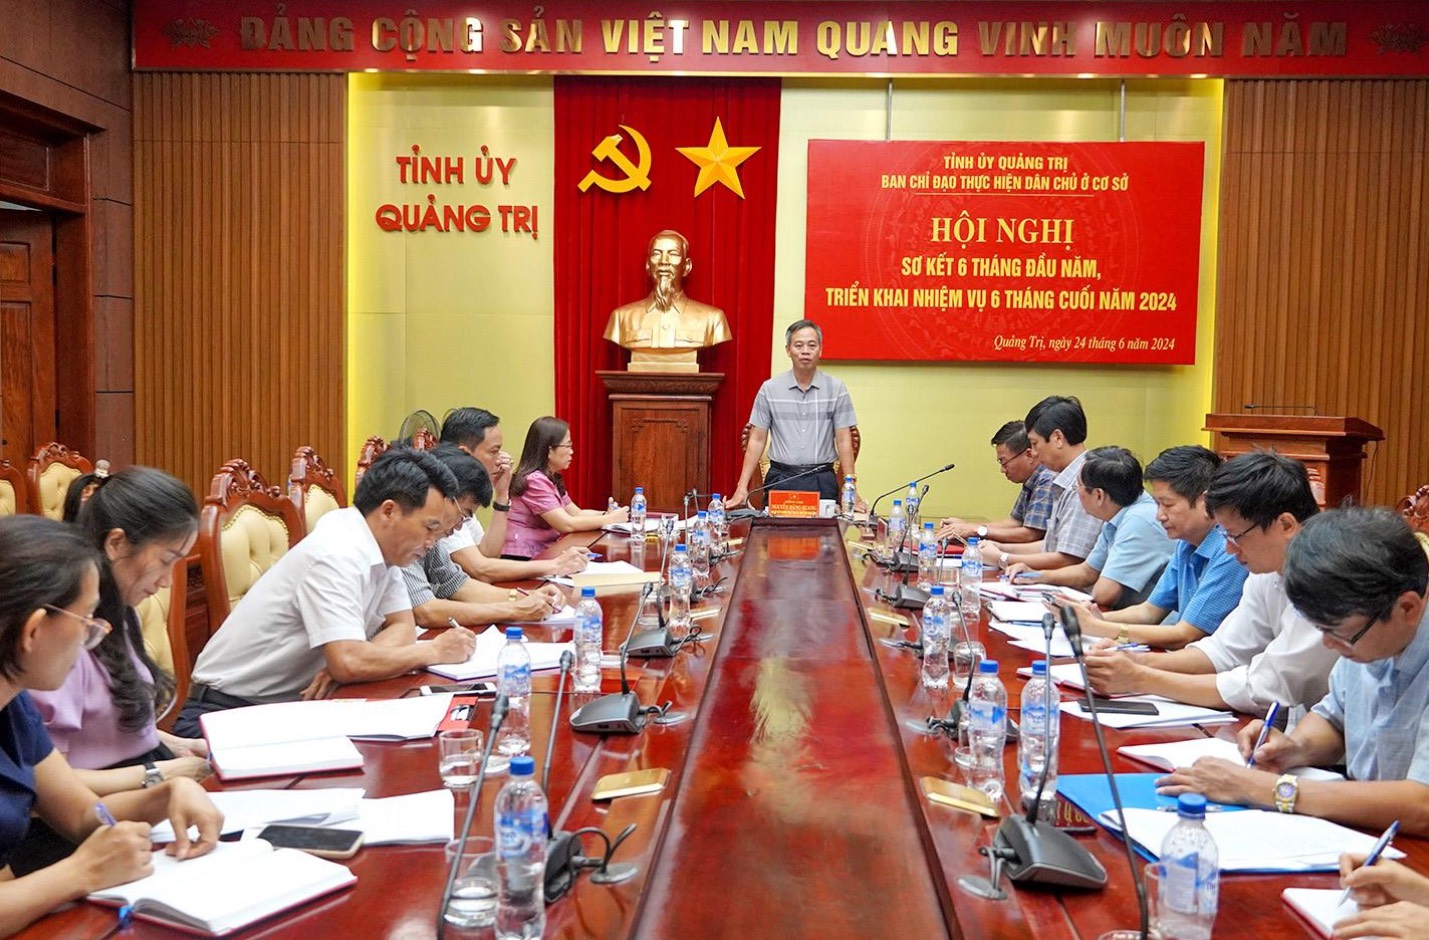 Ban Chỉ đạo thực hiện dân chủ ở cơ sở tỉnh Quảng Trị triển khai nhiệm vụ 6 tháng cuối năm 2024